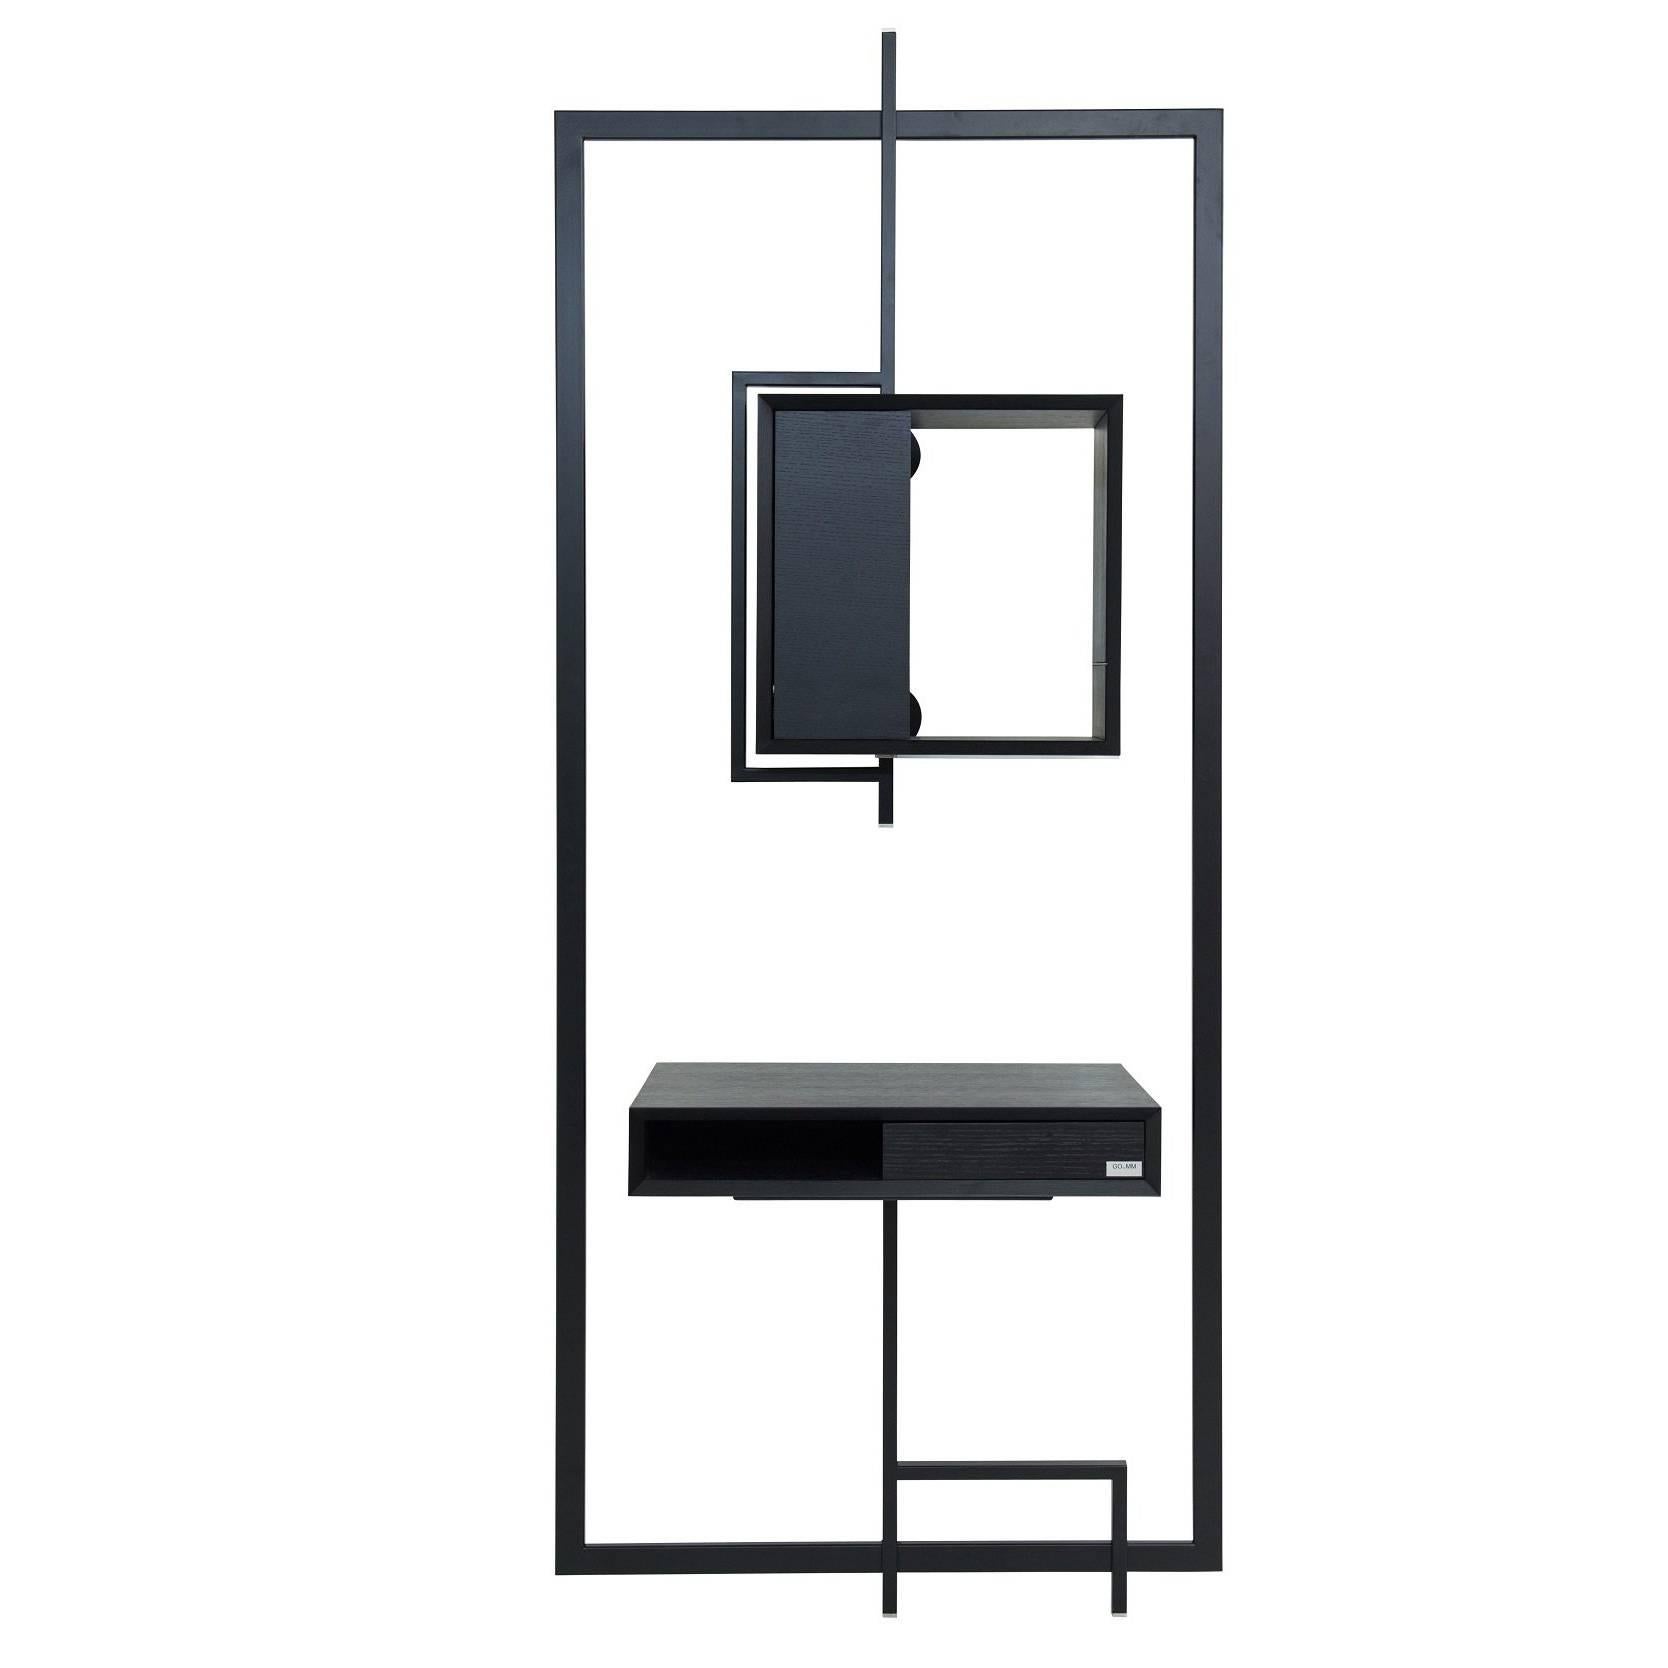 Black Desk Secretary COM:POS:ITION 0.9  Handcrafted Contemporary Design  For Sale